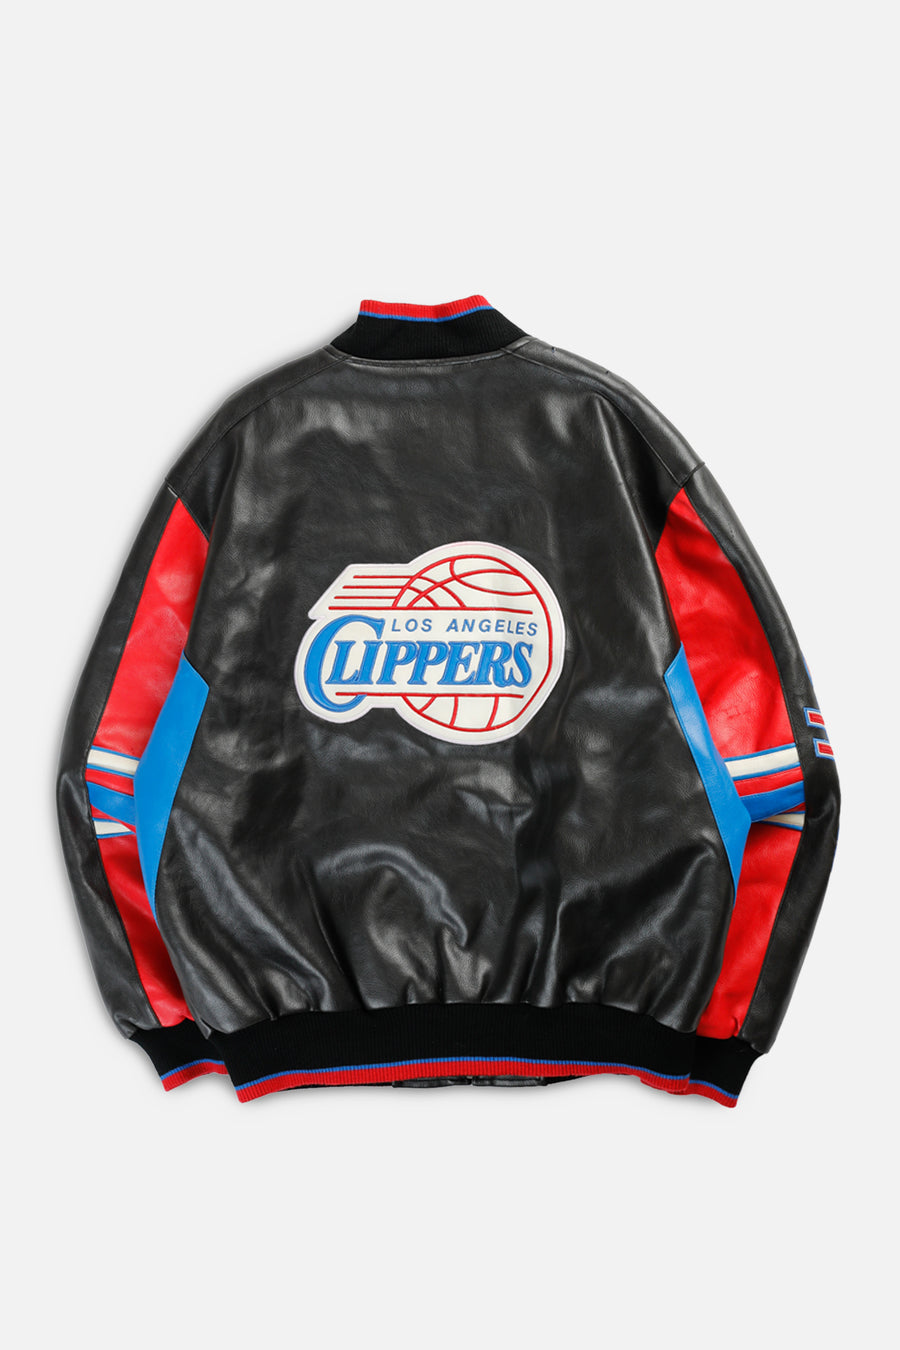 Vintage LA Clippers NBA Faux Leather Jacket - L